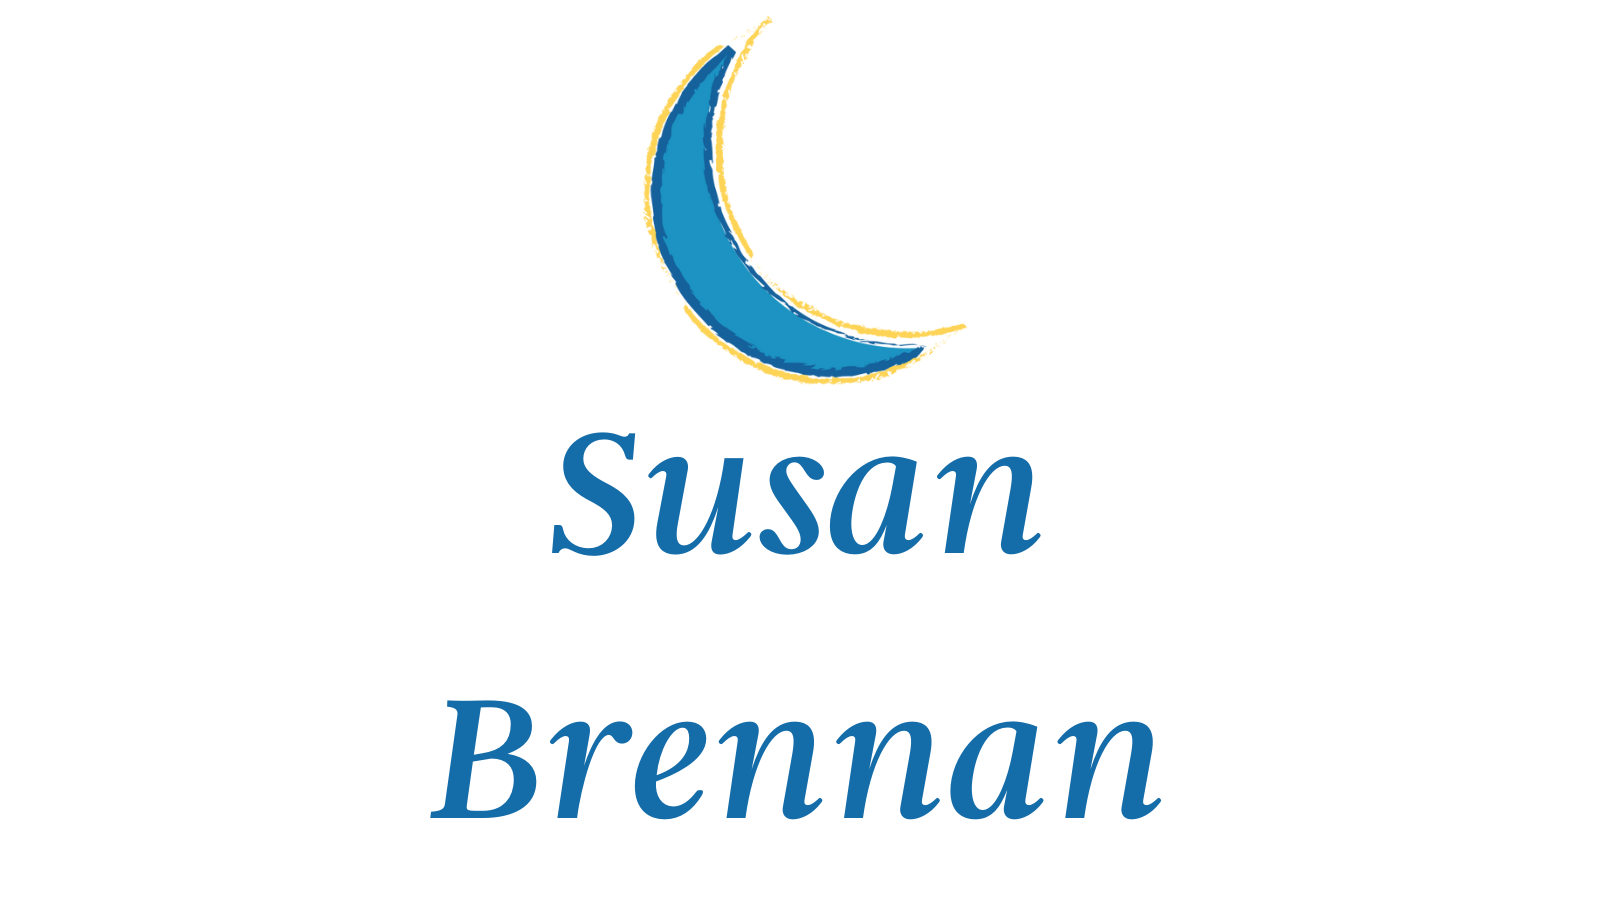 Susan Brennan